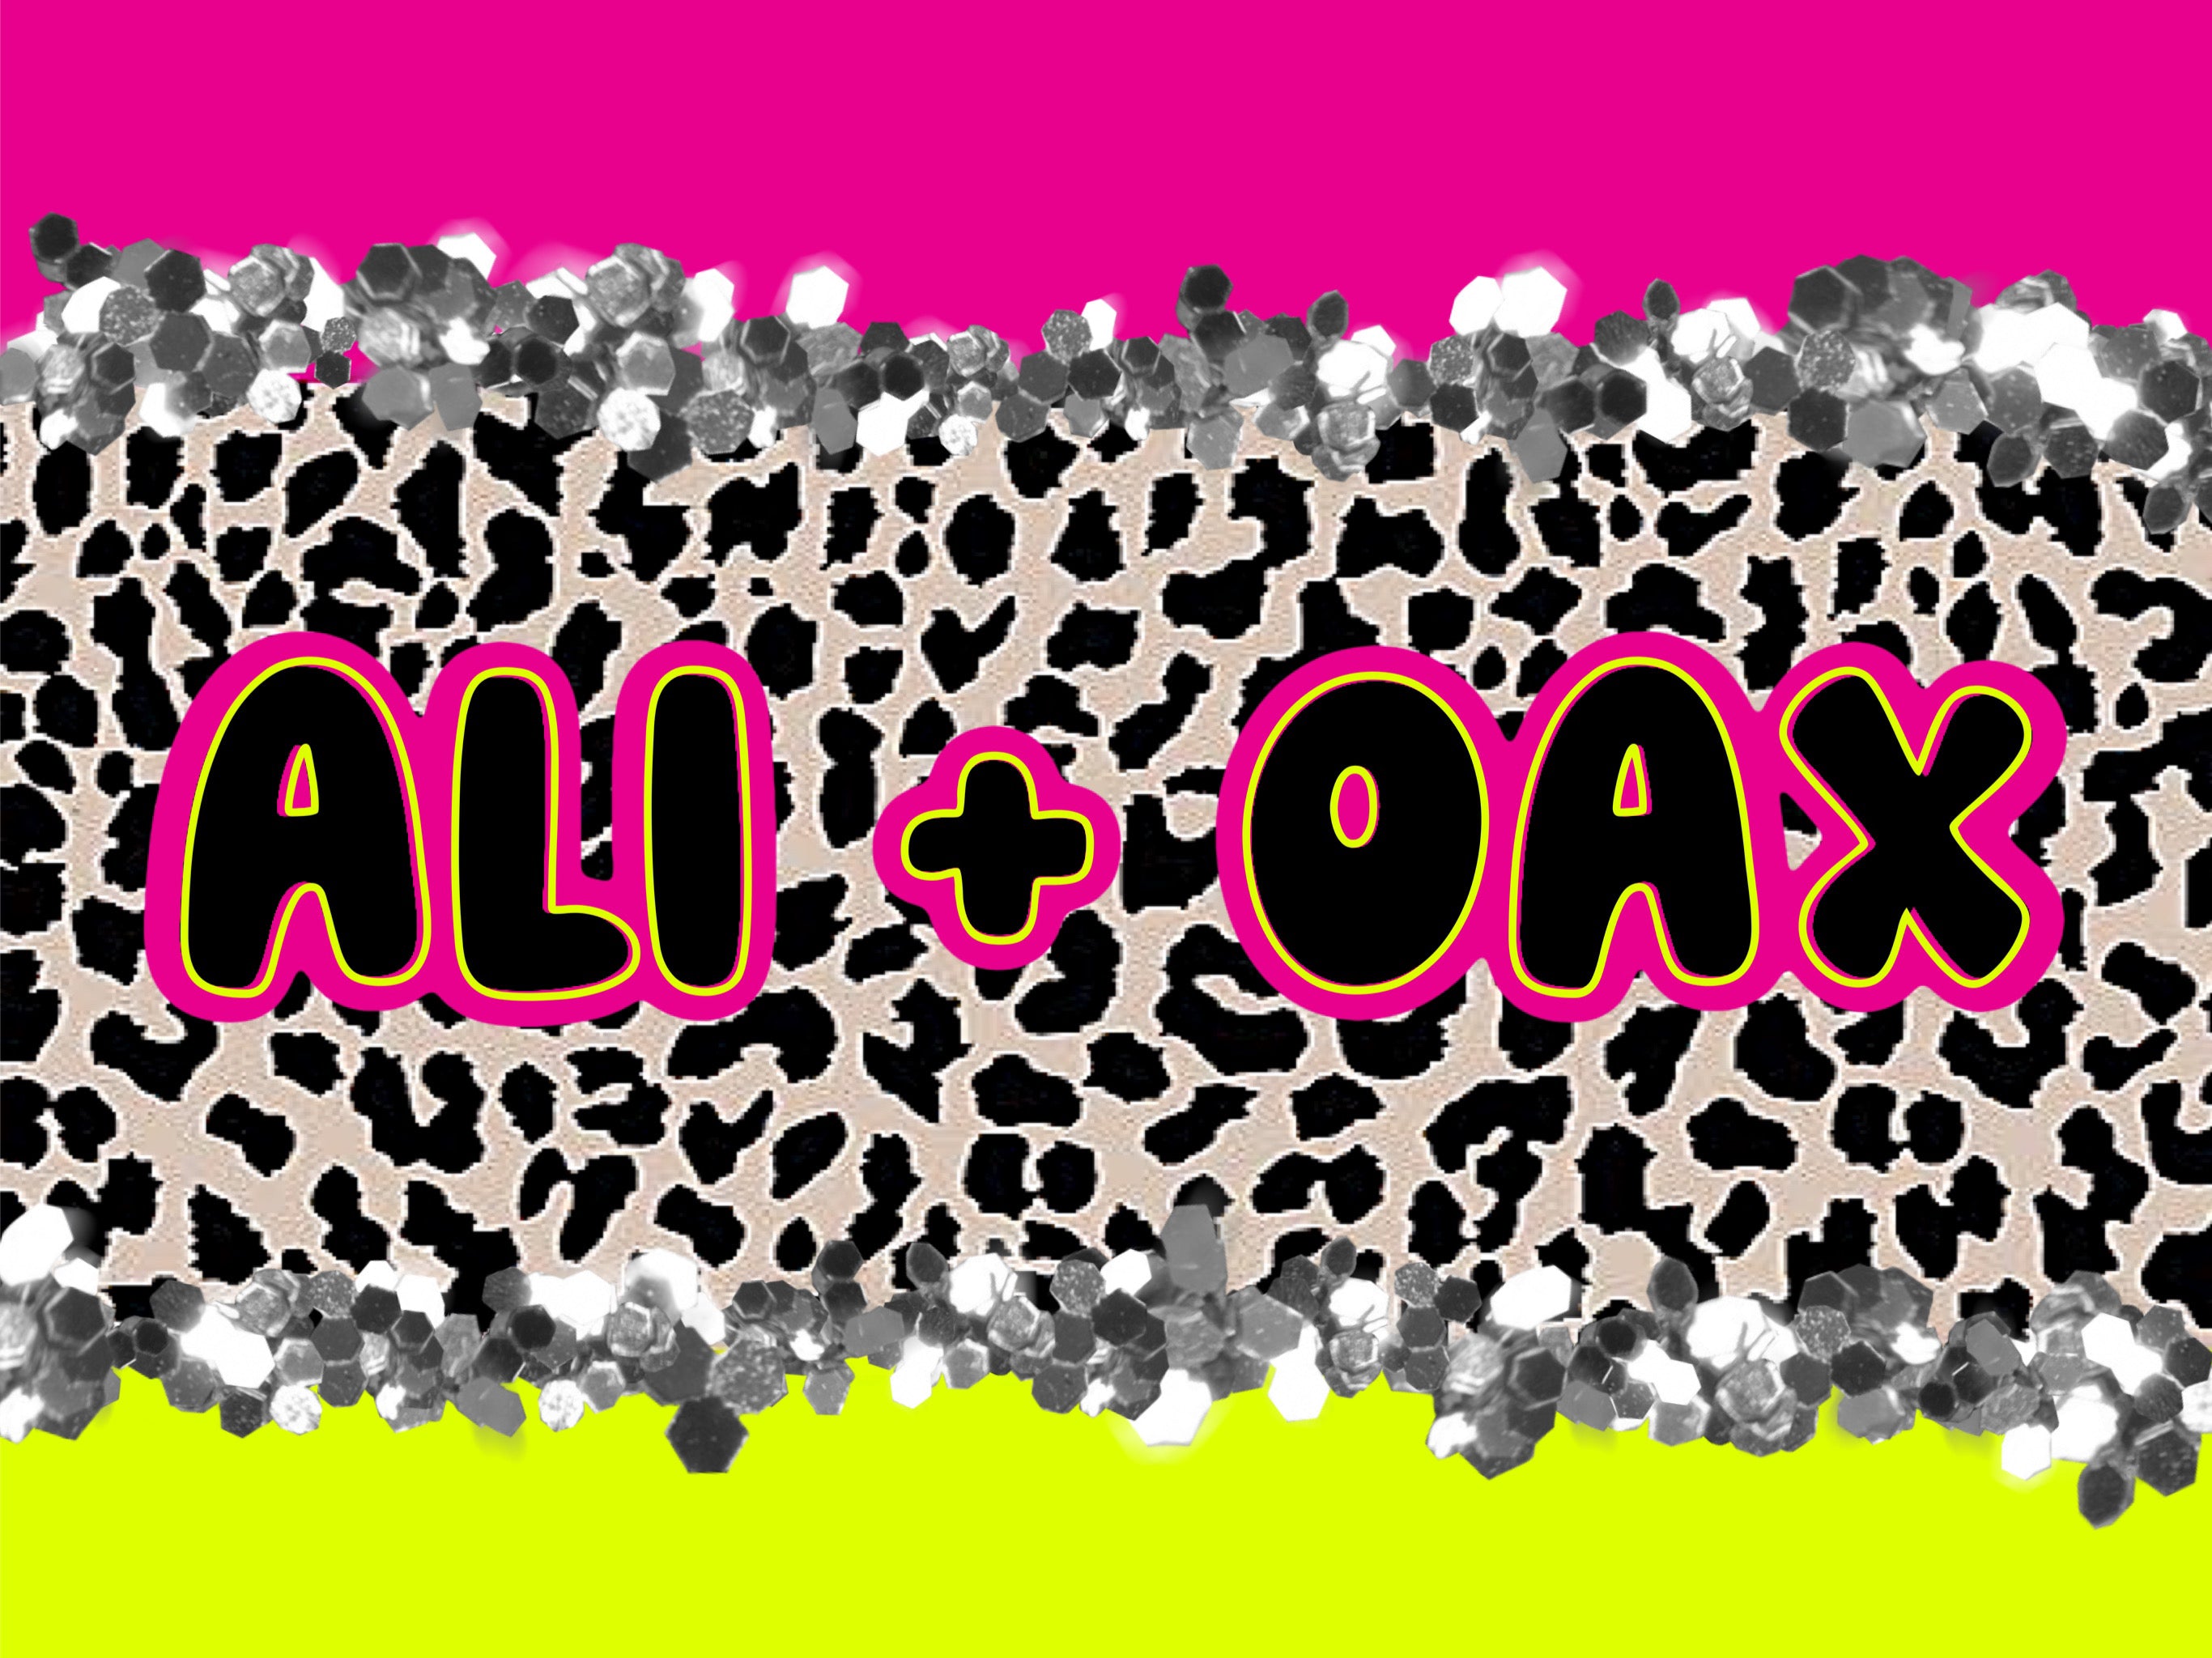 ali + oax